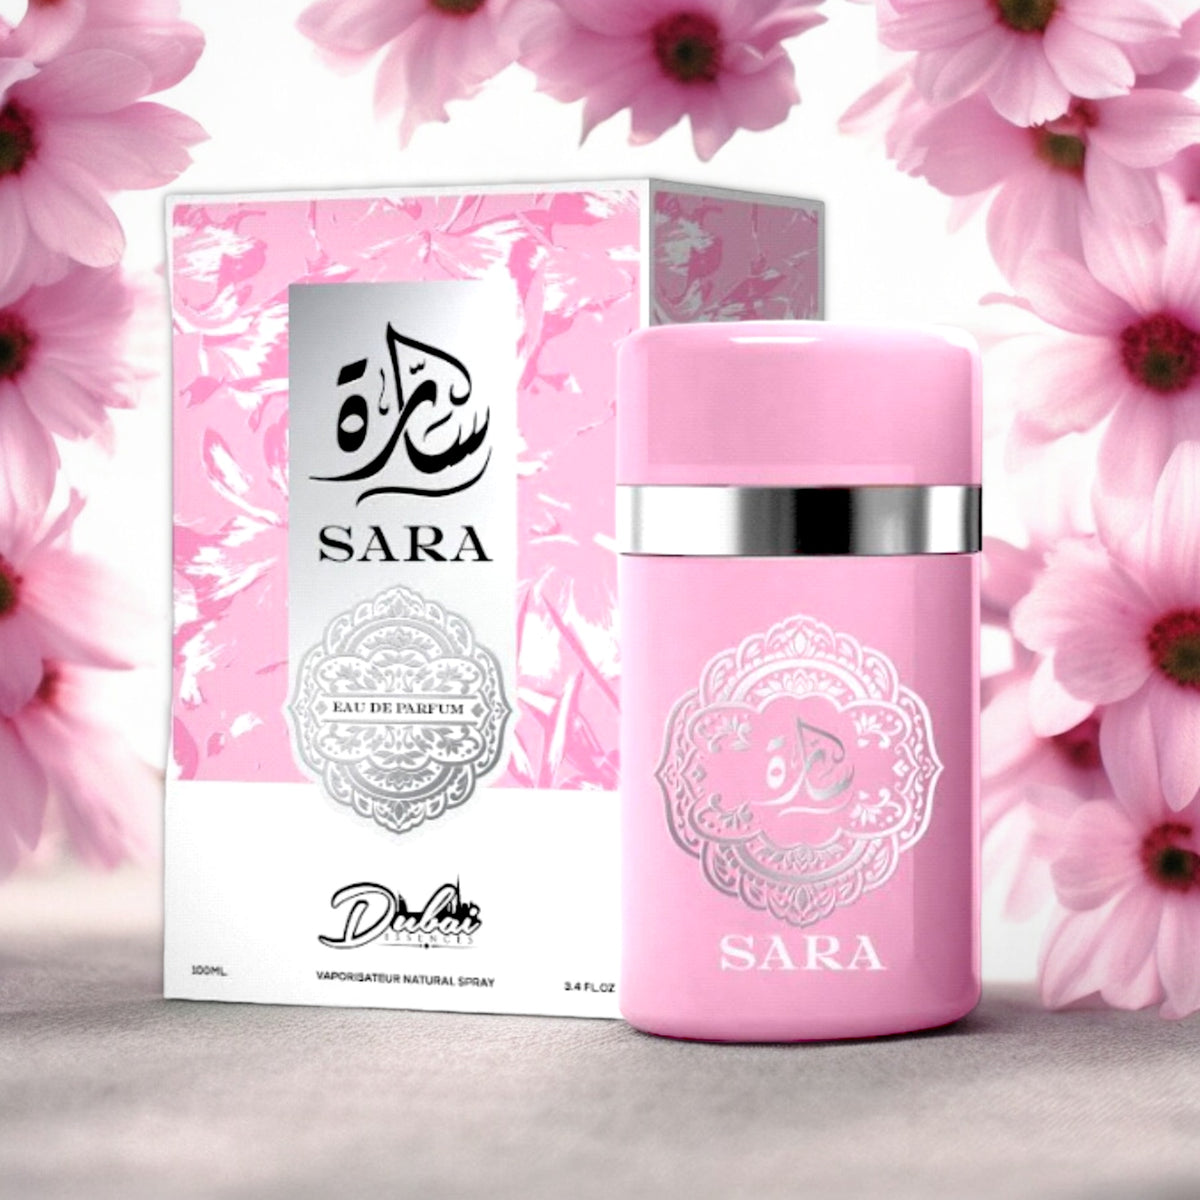 Sara by Dubai Essences Eau de Parfum for Women 3.4 oz